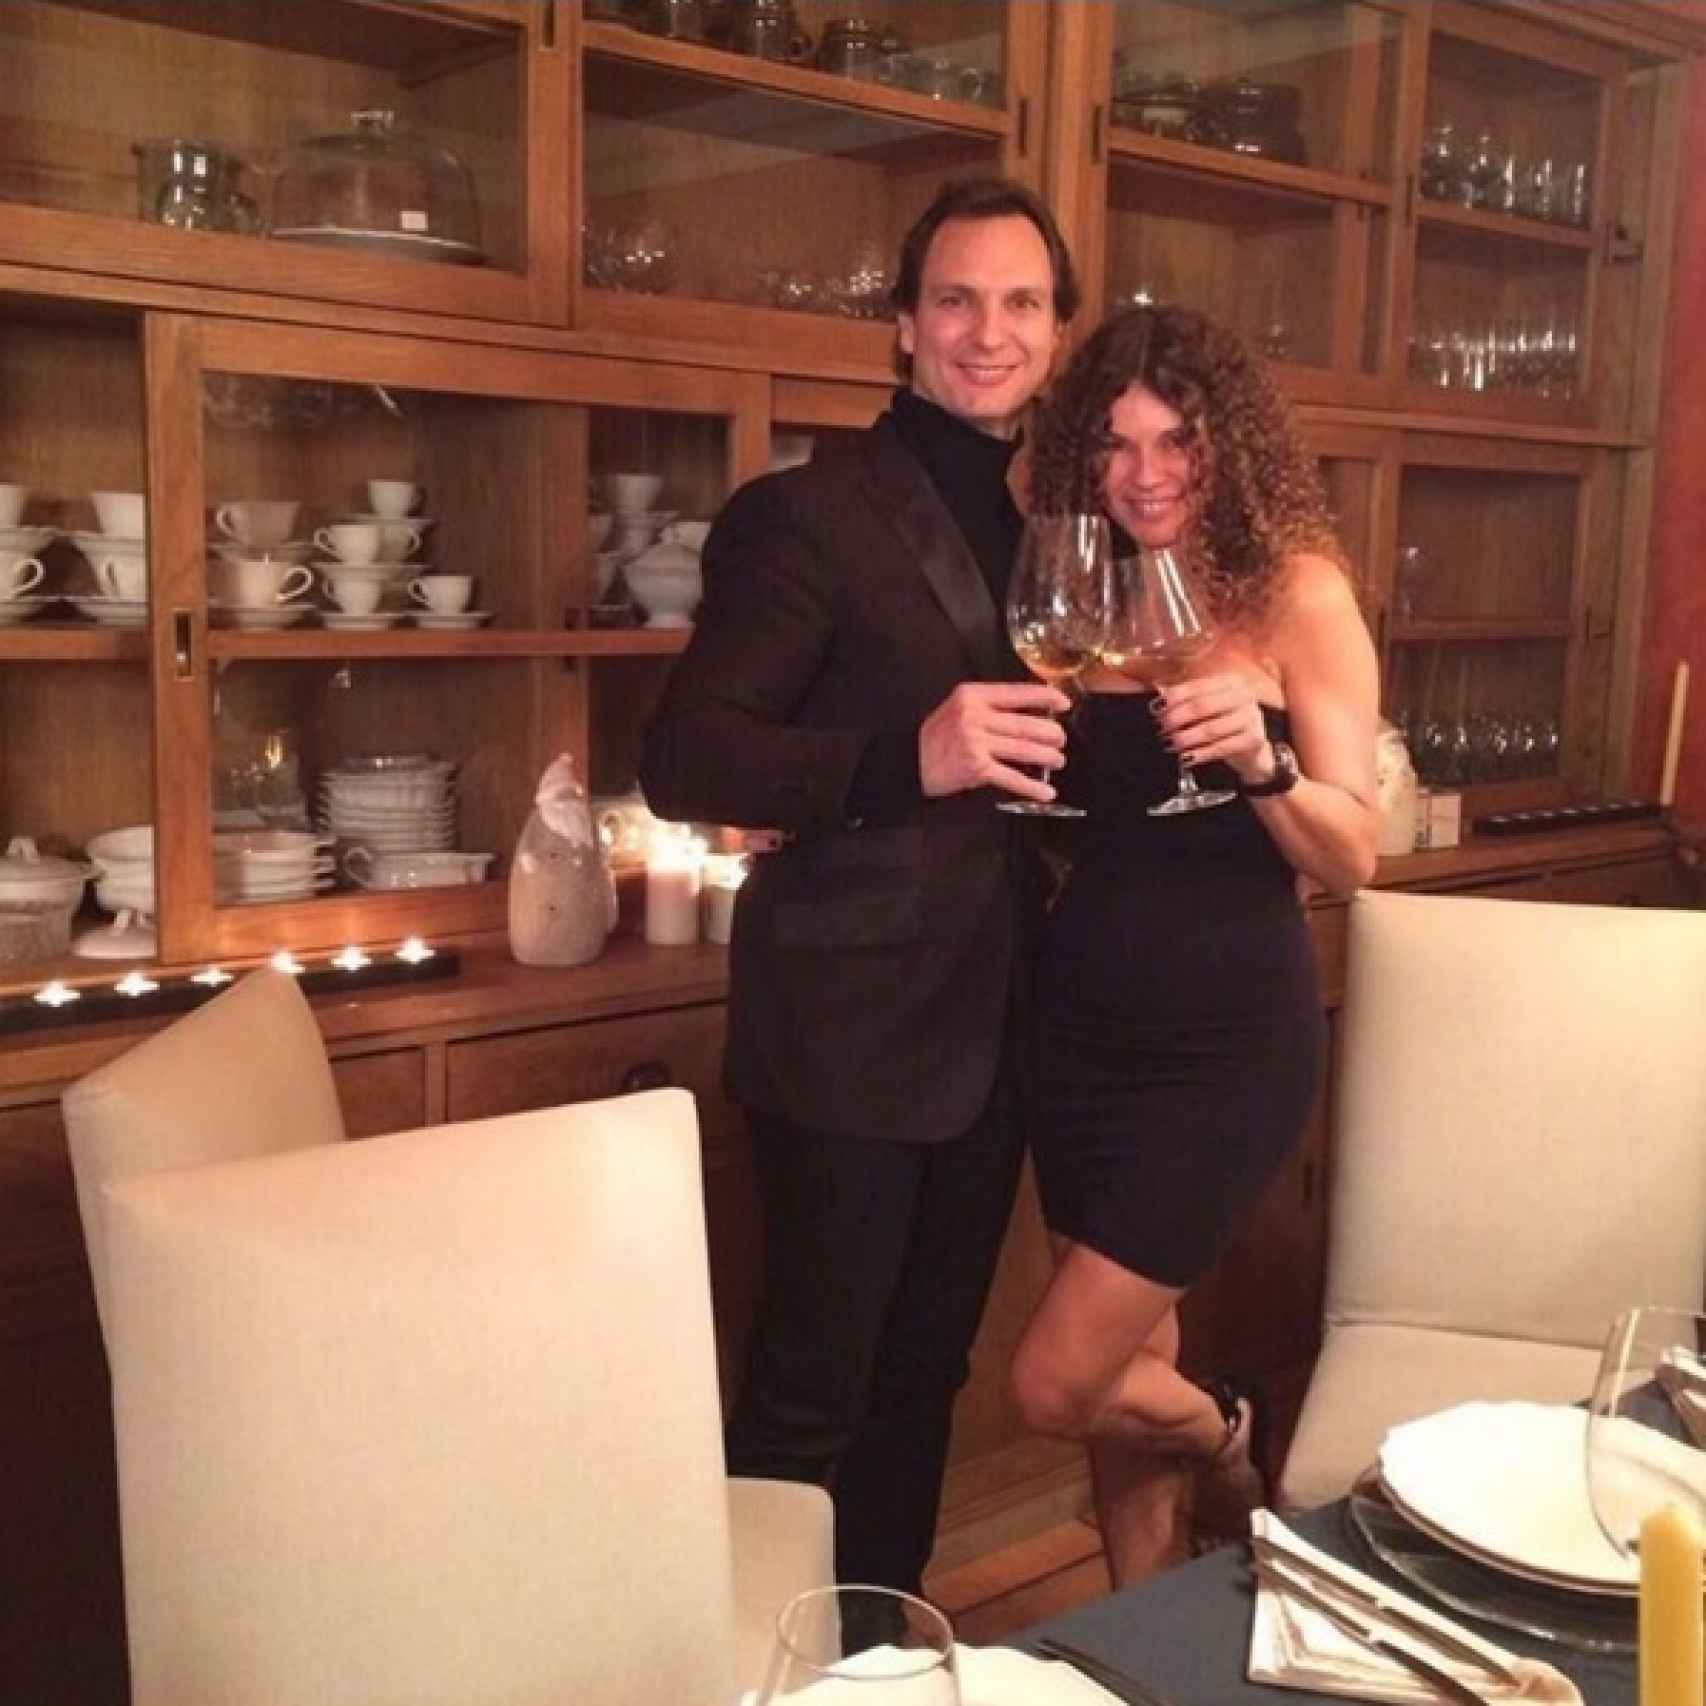 Angie con su hermano Javier Cardenas cenando en Madrid